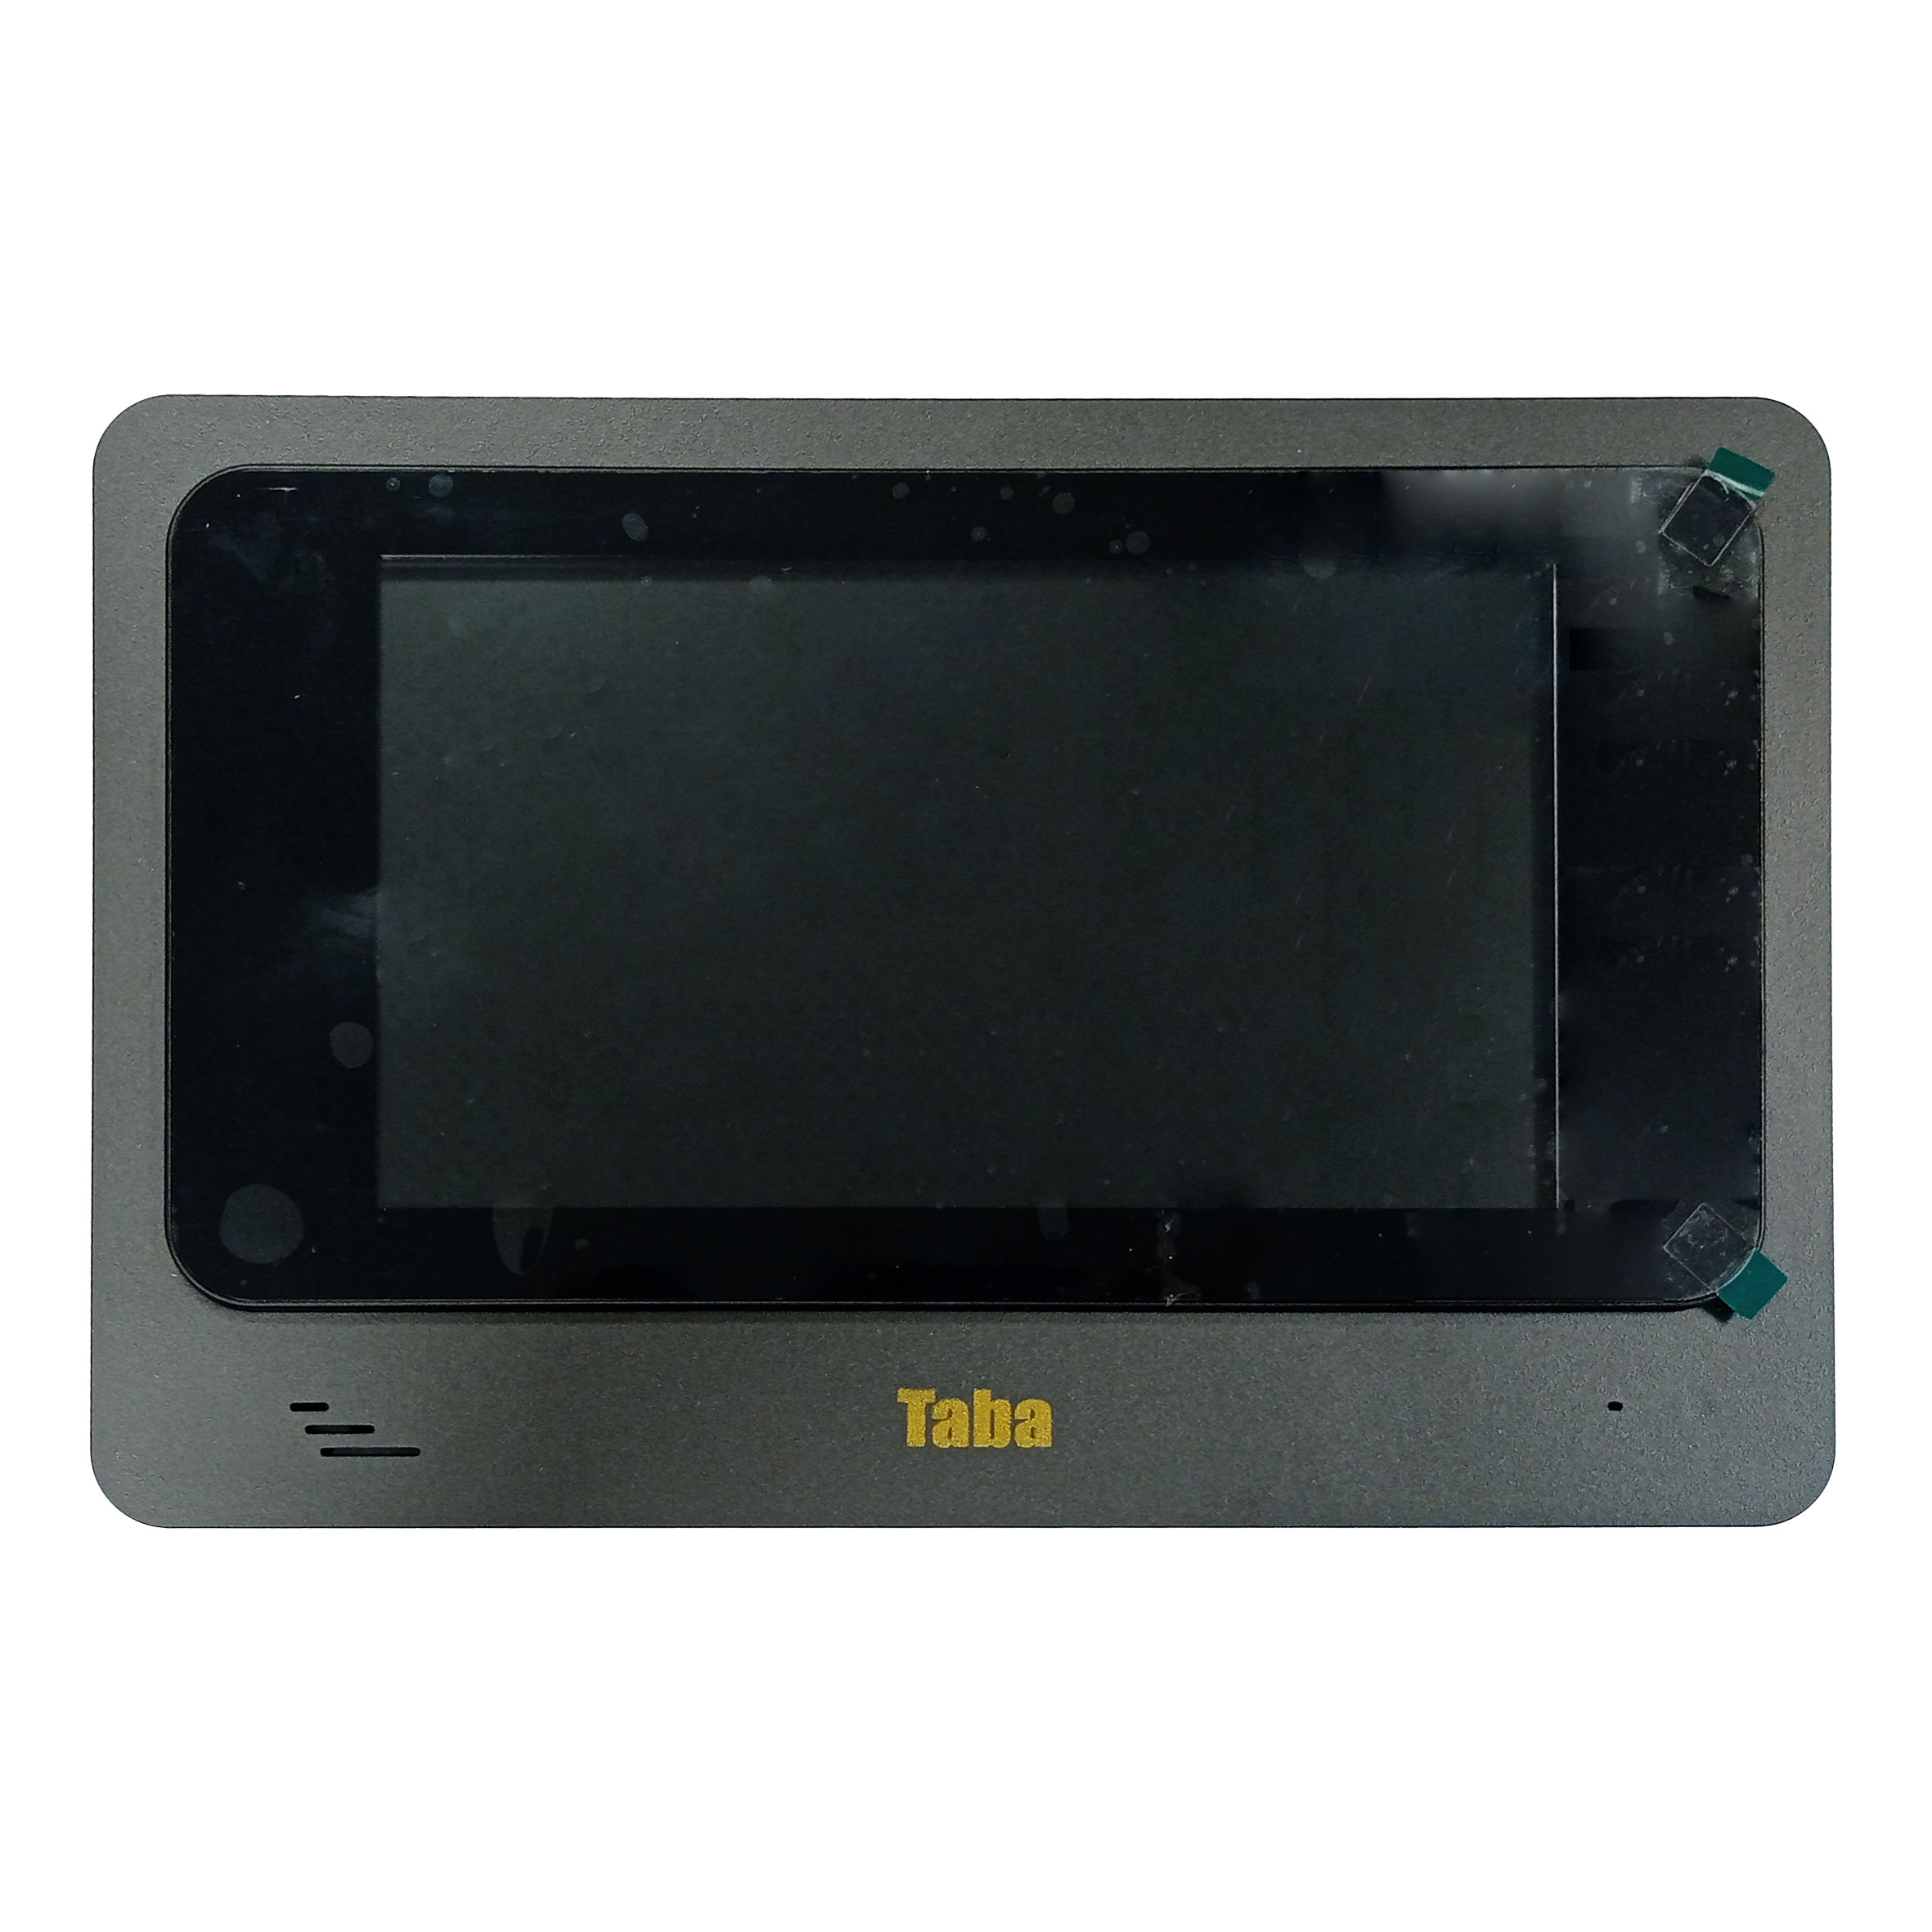 نکته خرید - قیمت روز مانیتور دربازکن تابا مدل تصویری لمسی رنگی TVD-4070 خرید